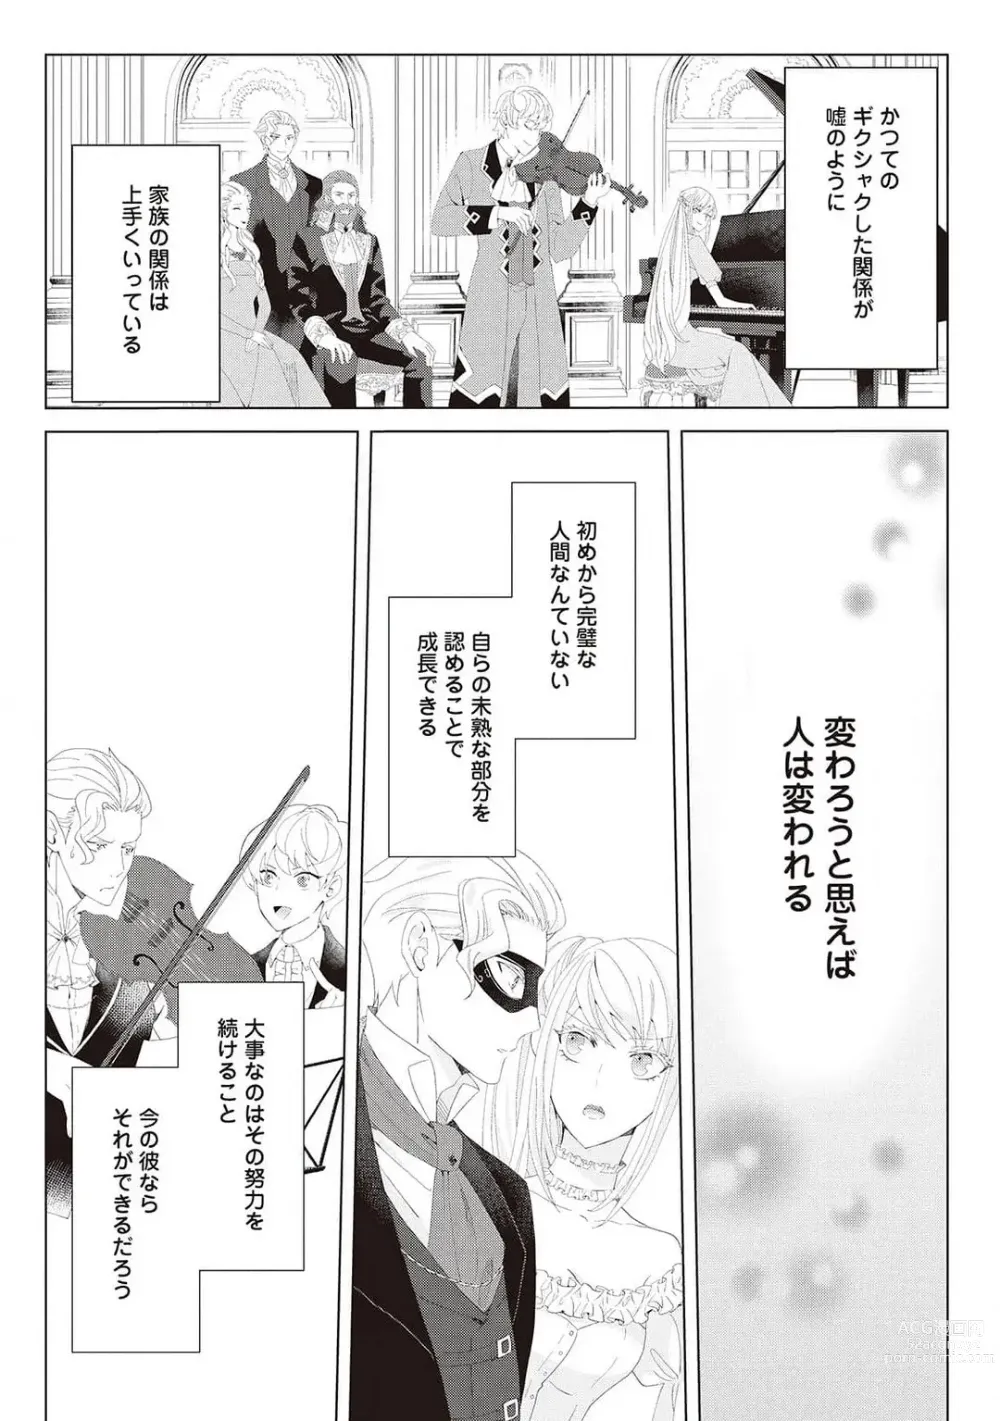 Page 427 of manga 悪役令嬢に転生したけど、破局したはずのカタブツ王太子に溺愛されてます！？ 1-18